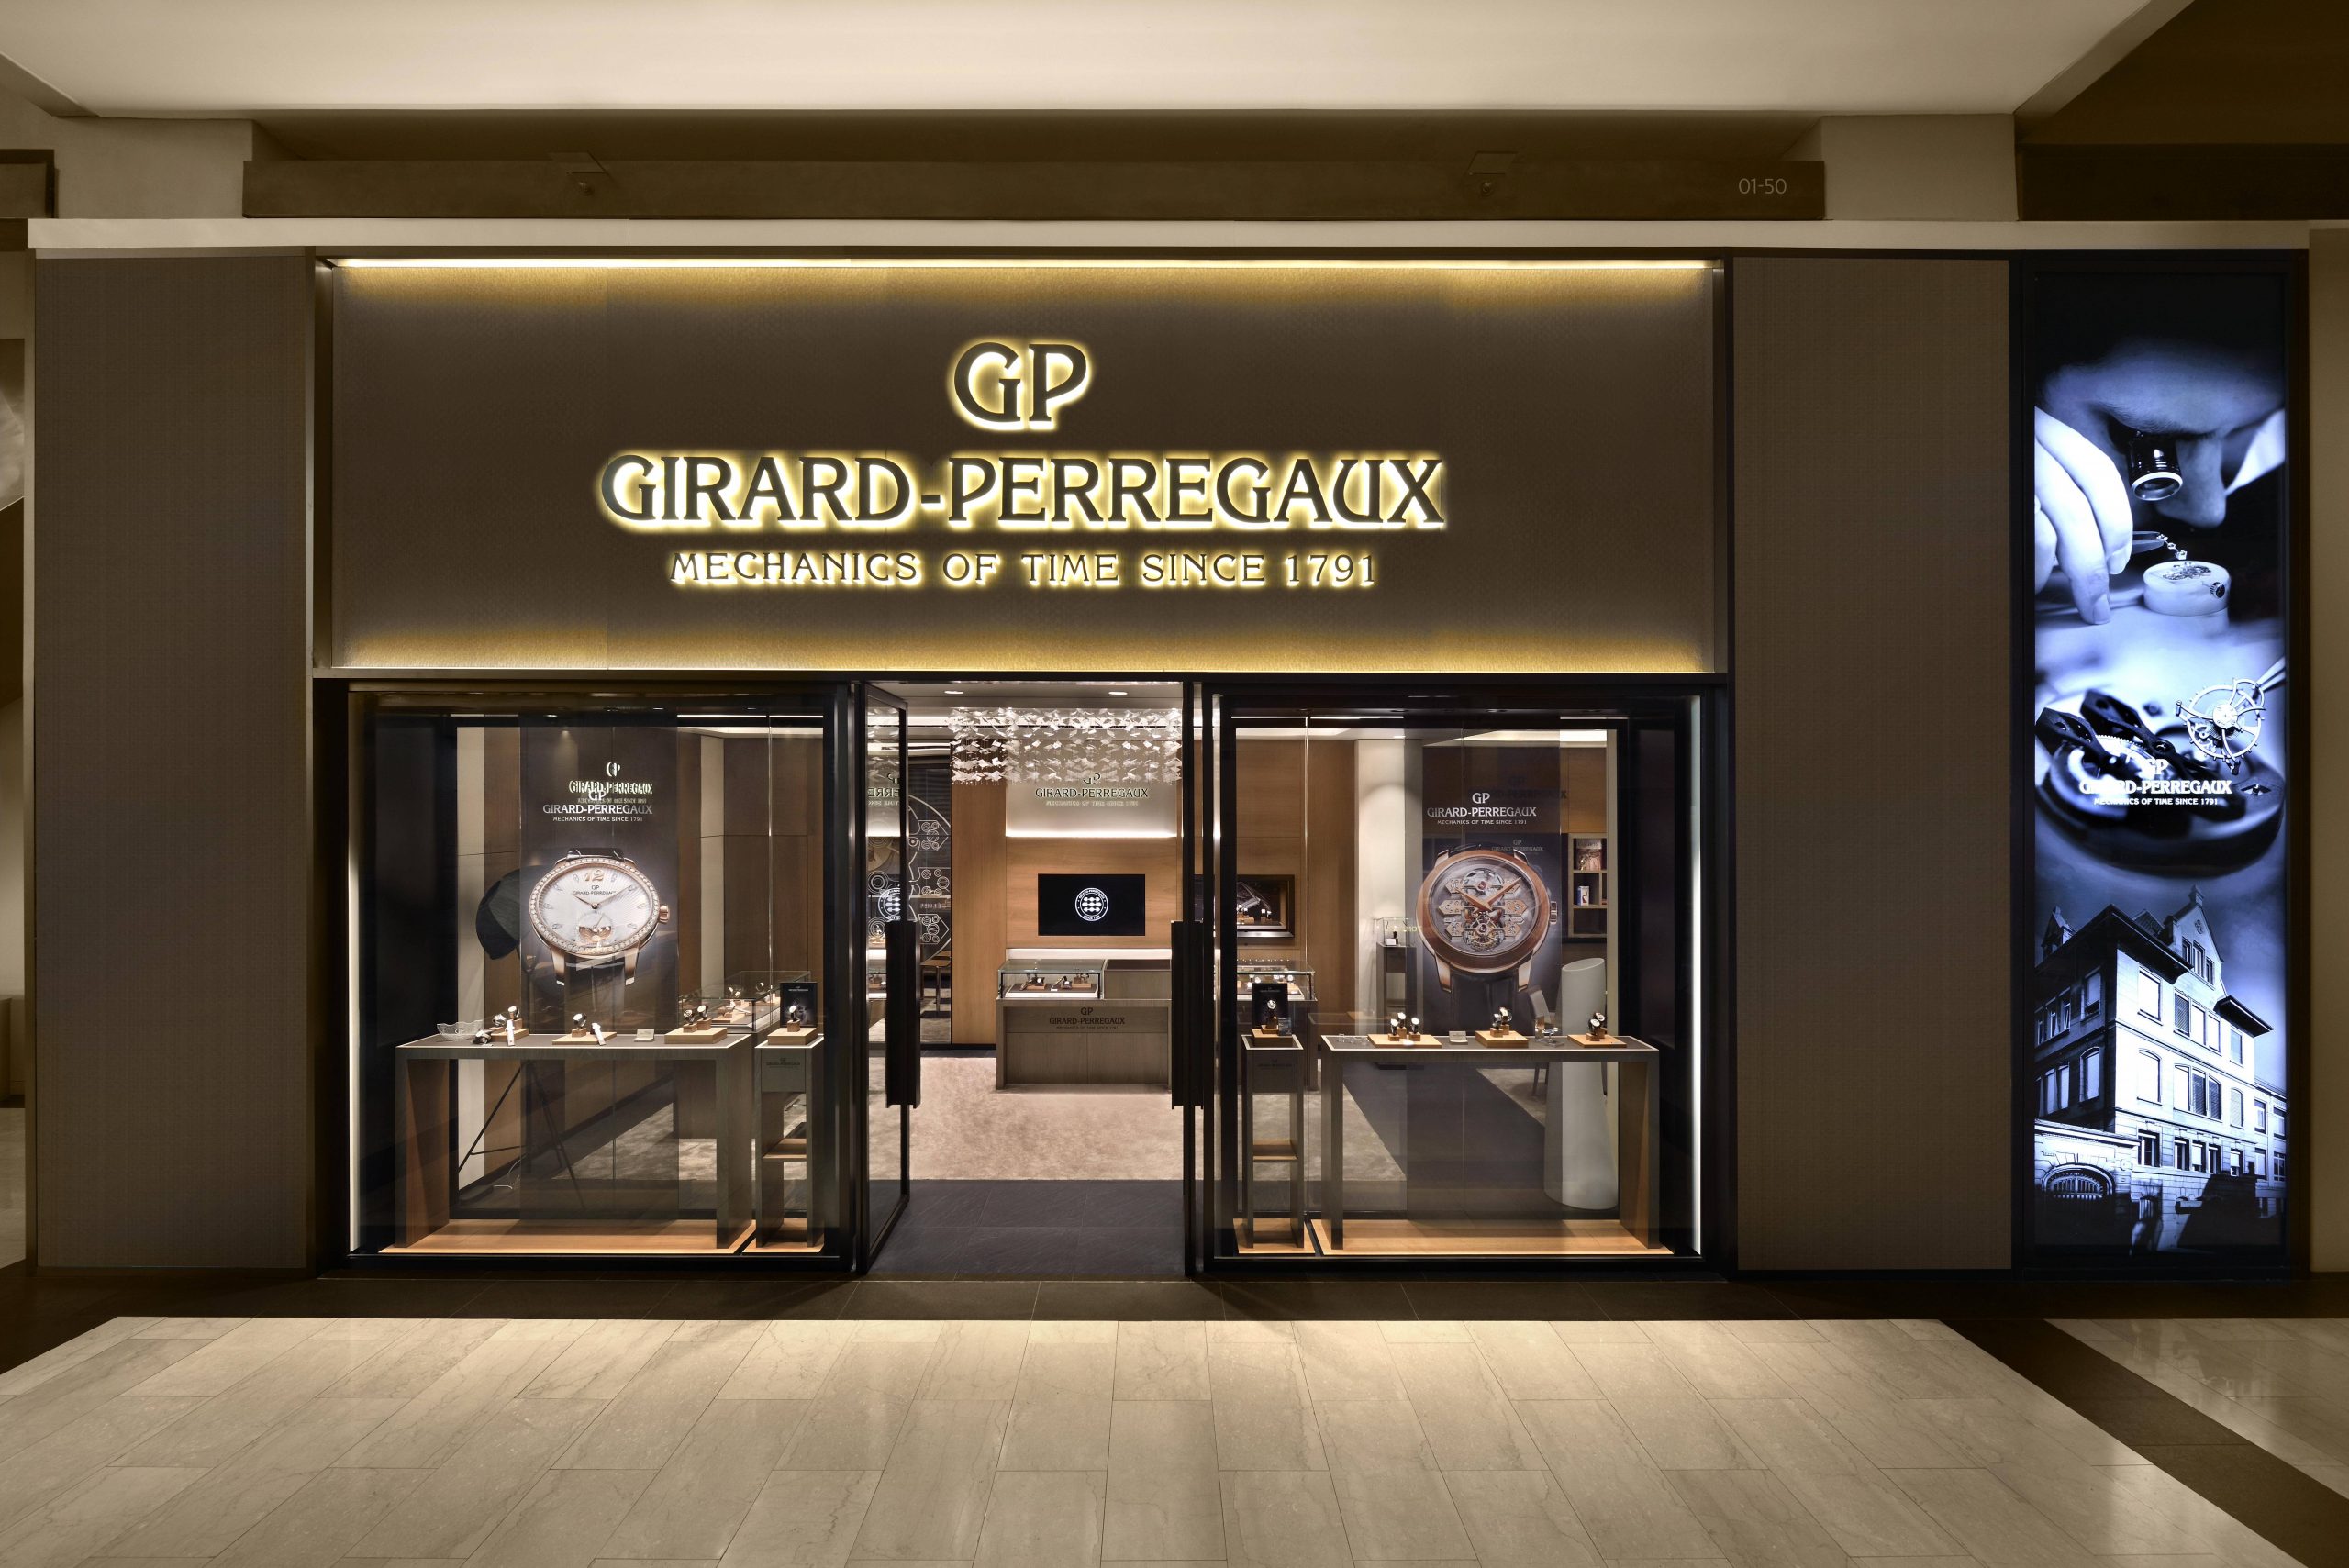 Girard-Perregaux Hour Glass Singapore Girard-Perregaux boutique facade